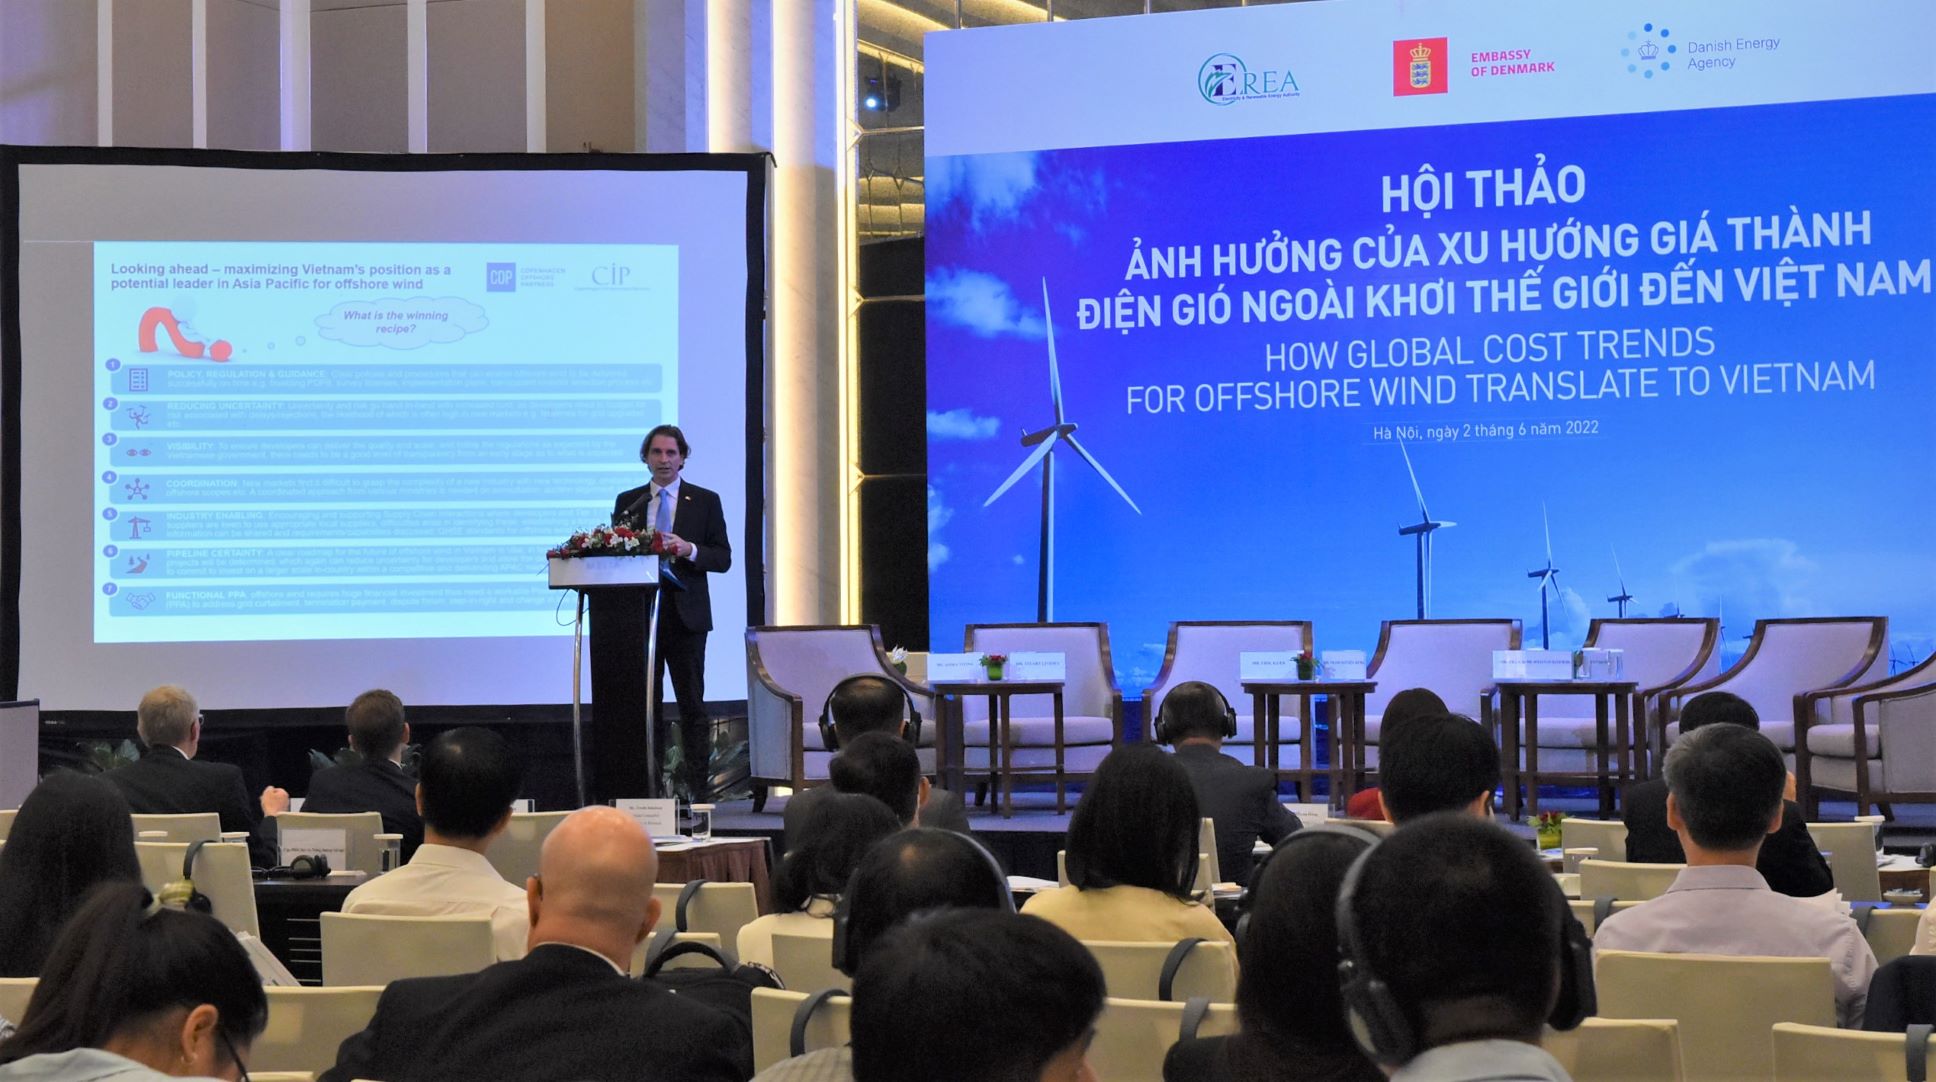 TGĐ Dự án La Gàn chia sẻ kinh nghiệm và tham gia phiên thảo luận tại hội thảo “Ảnh hưởng của xu hướng giá thành điện gió ngoài khơi thế giới đến Việt Nam”